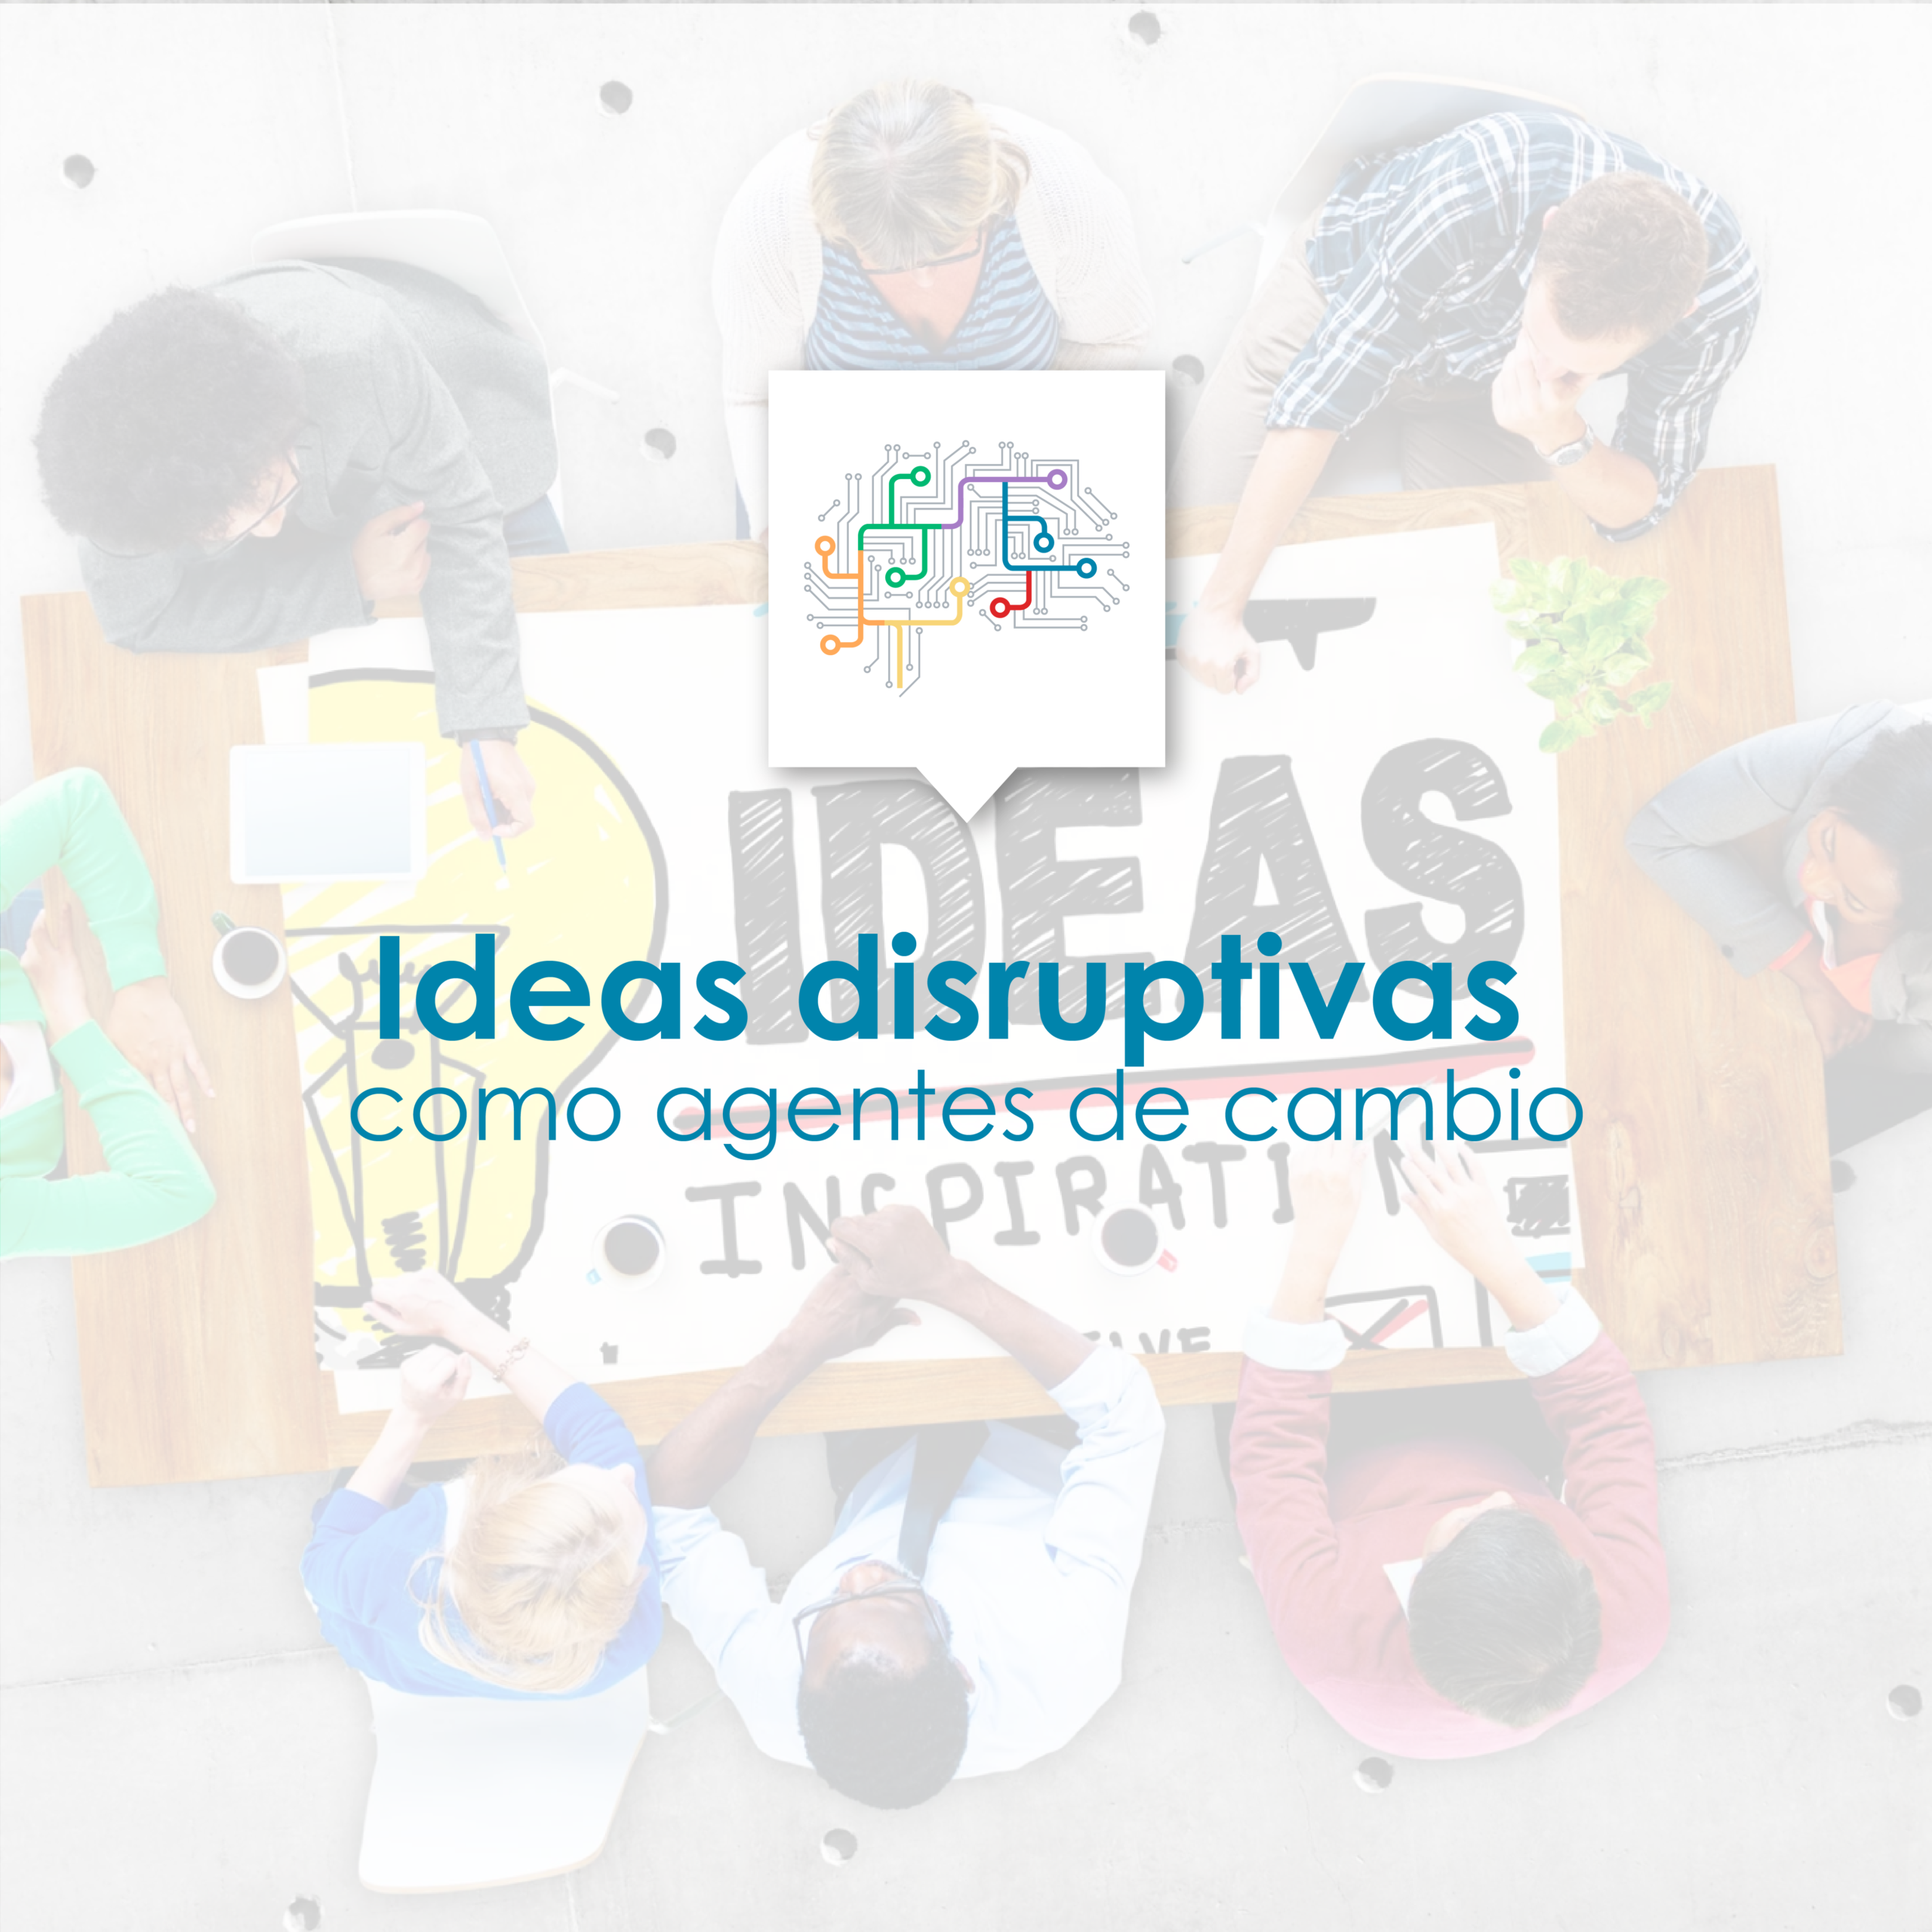 Ideas disruptivas como agentes de cambio